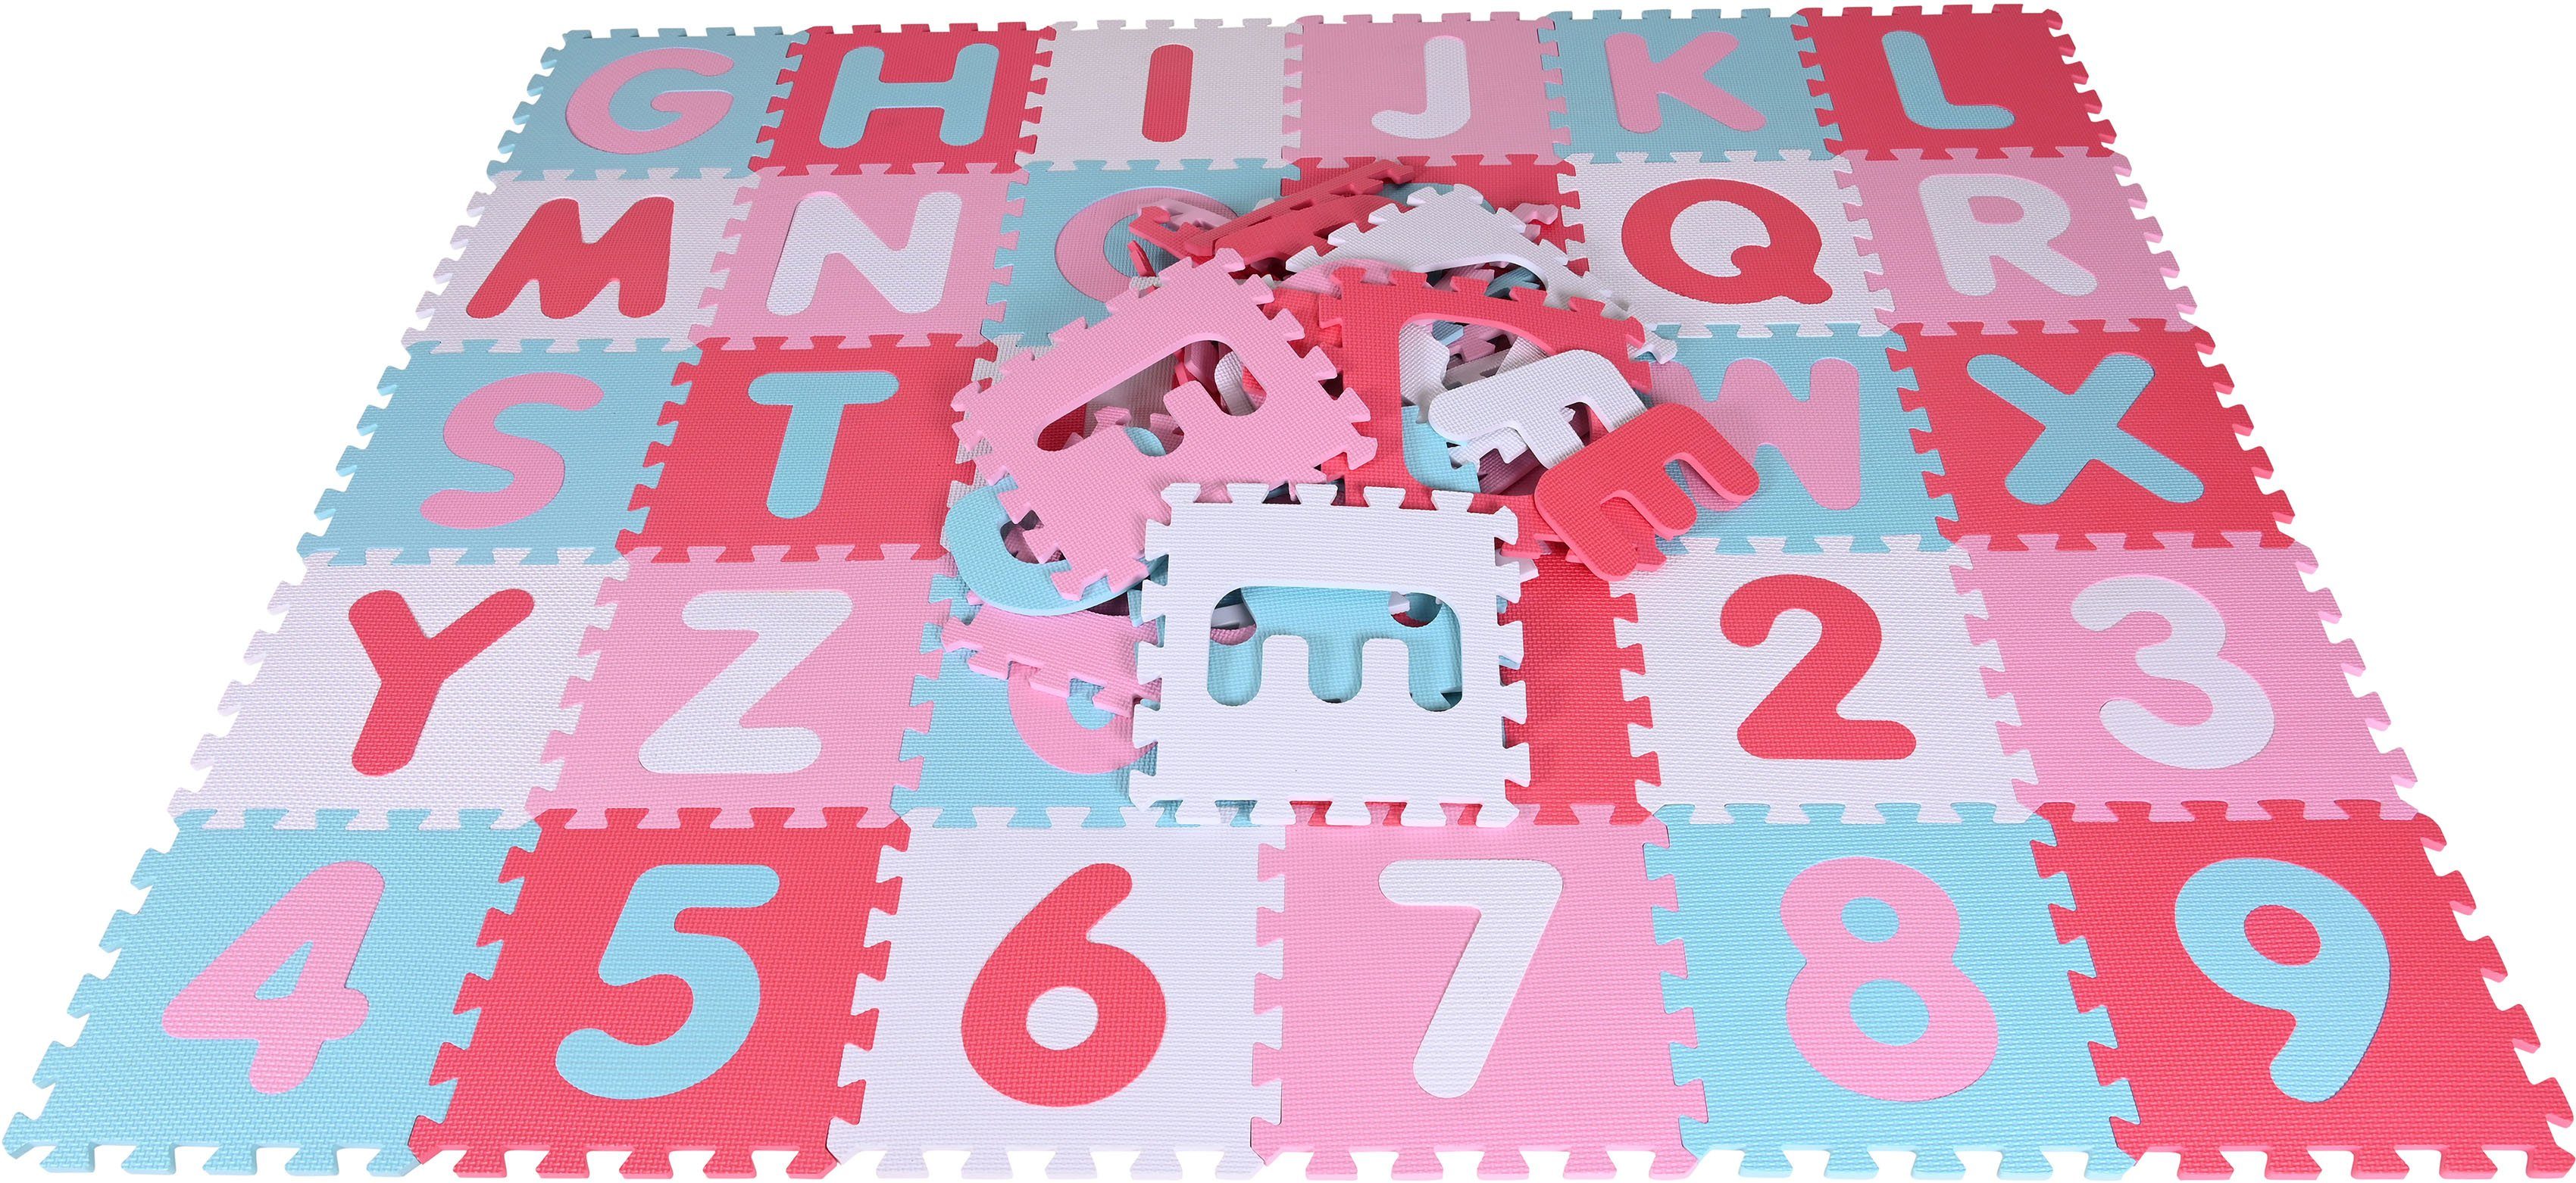 Knorrtoys® + Puzzle Puzzlematte, Zahlen, Bodenpuzzle Pink-rosa, Puzzleteile, Alphabet